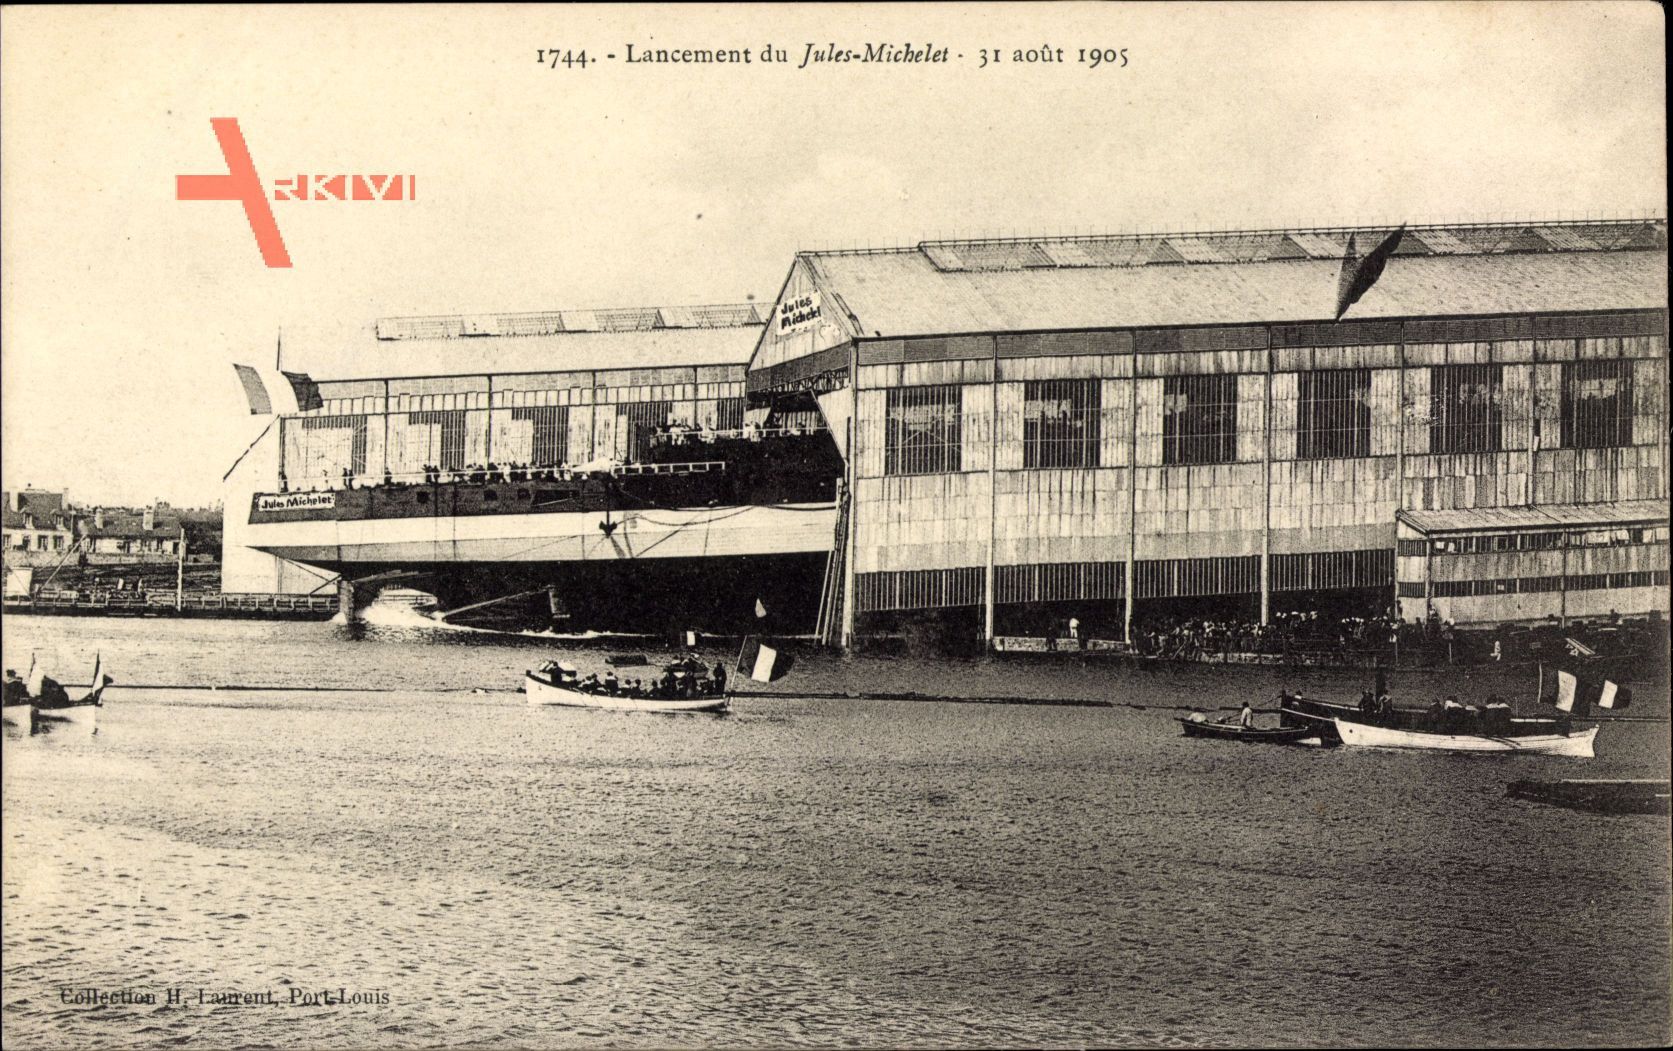 Lancement du Jules Michelet, 31 août 1905, Kriegsschiff, Werft